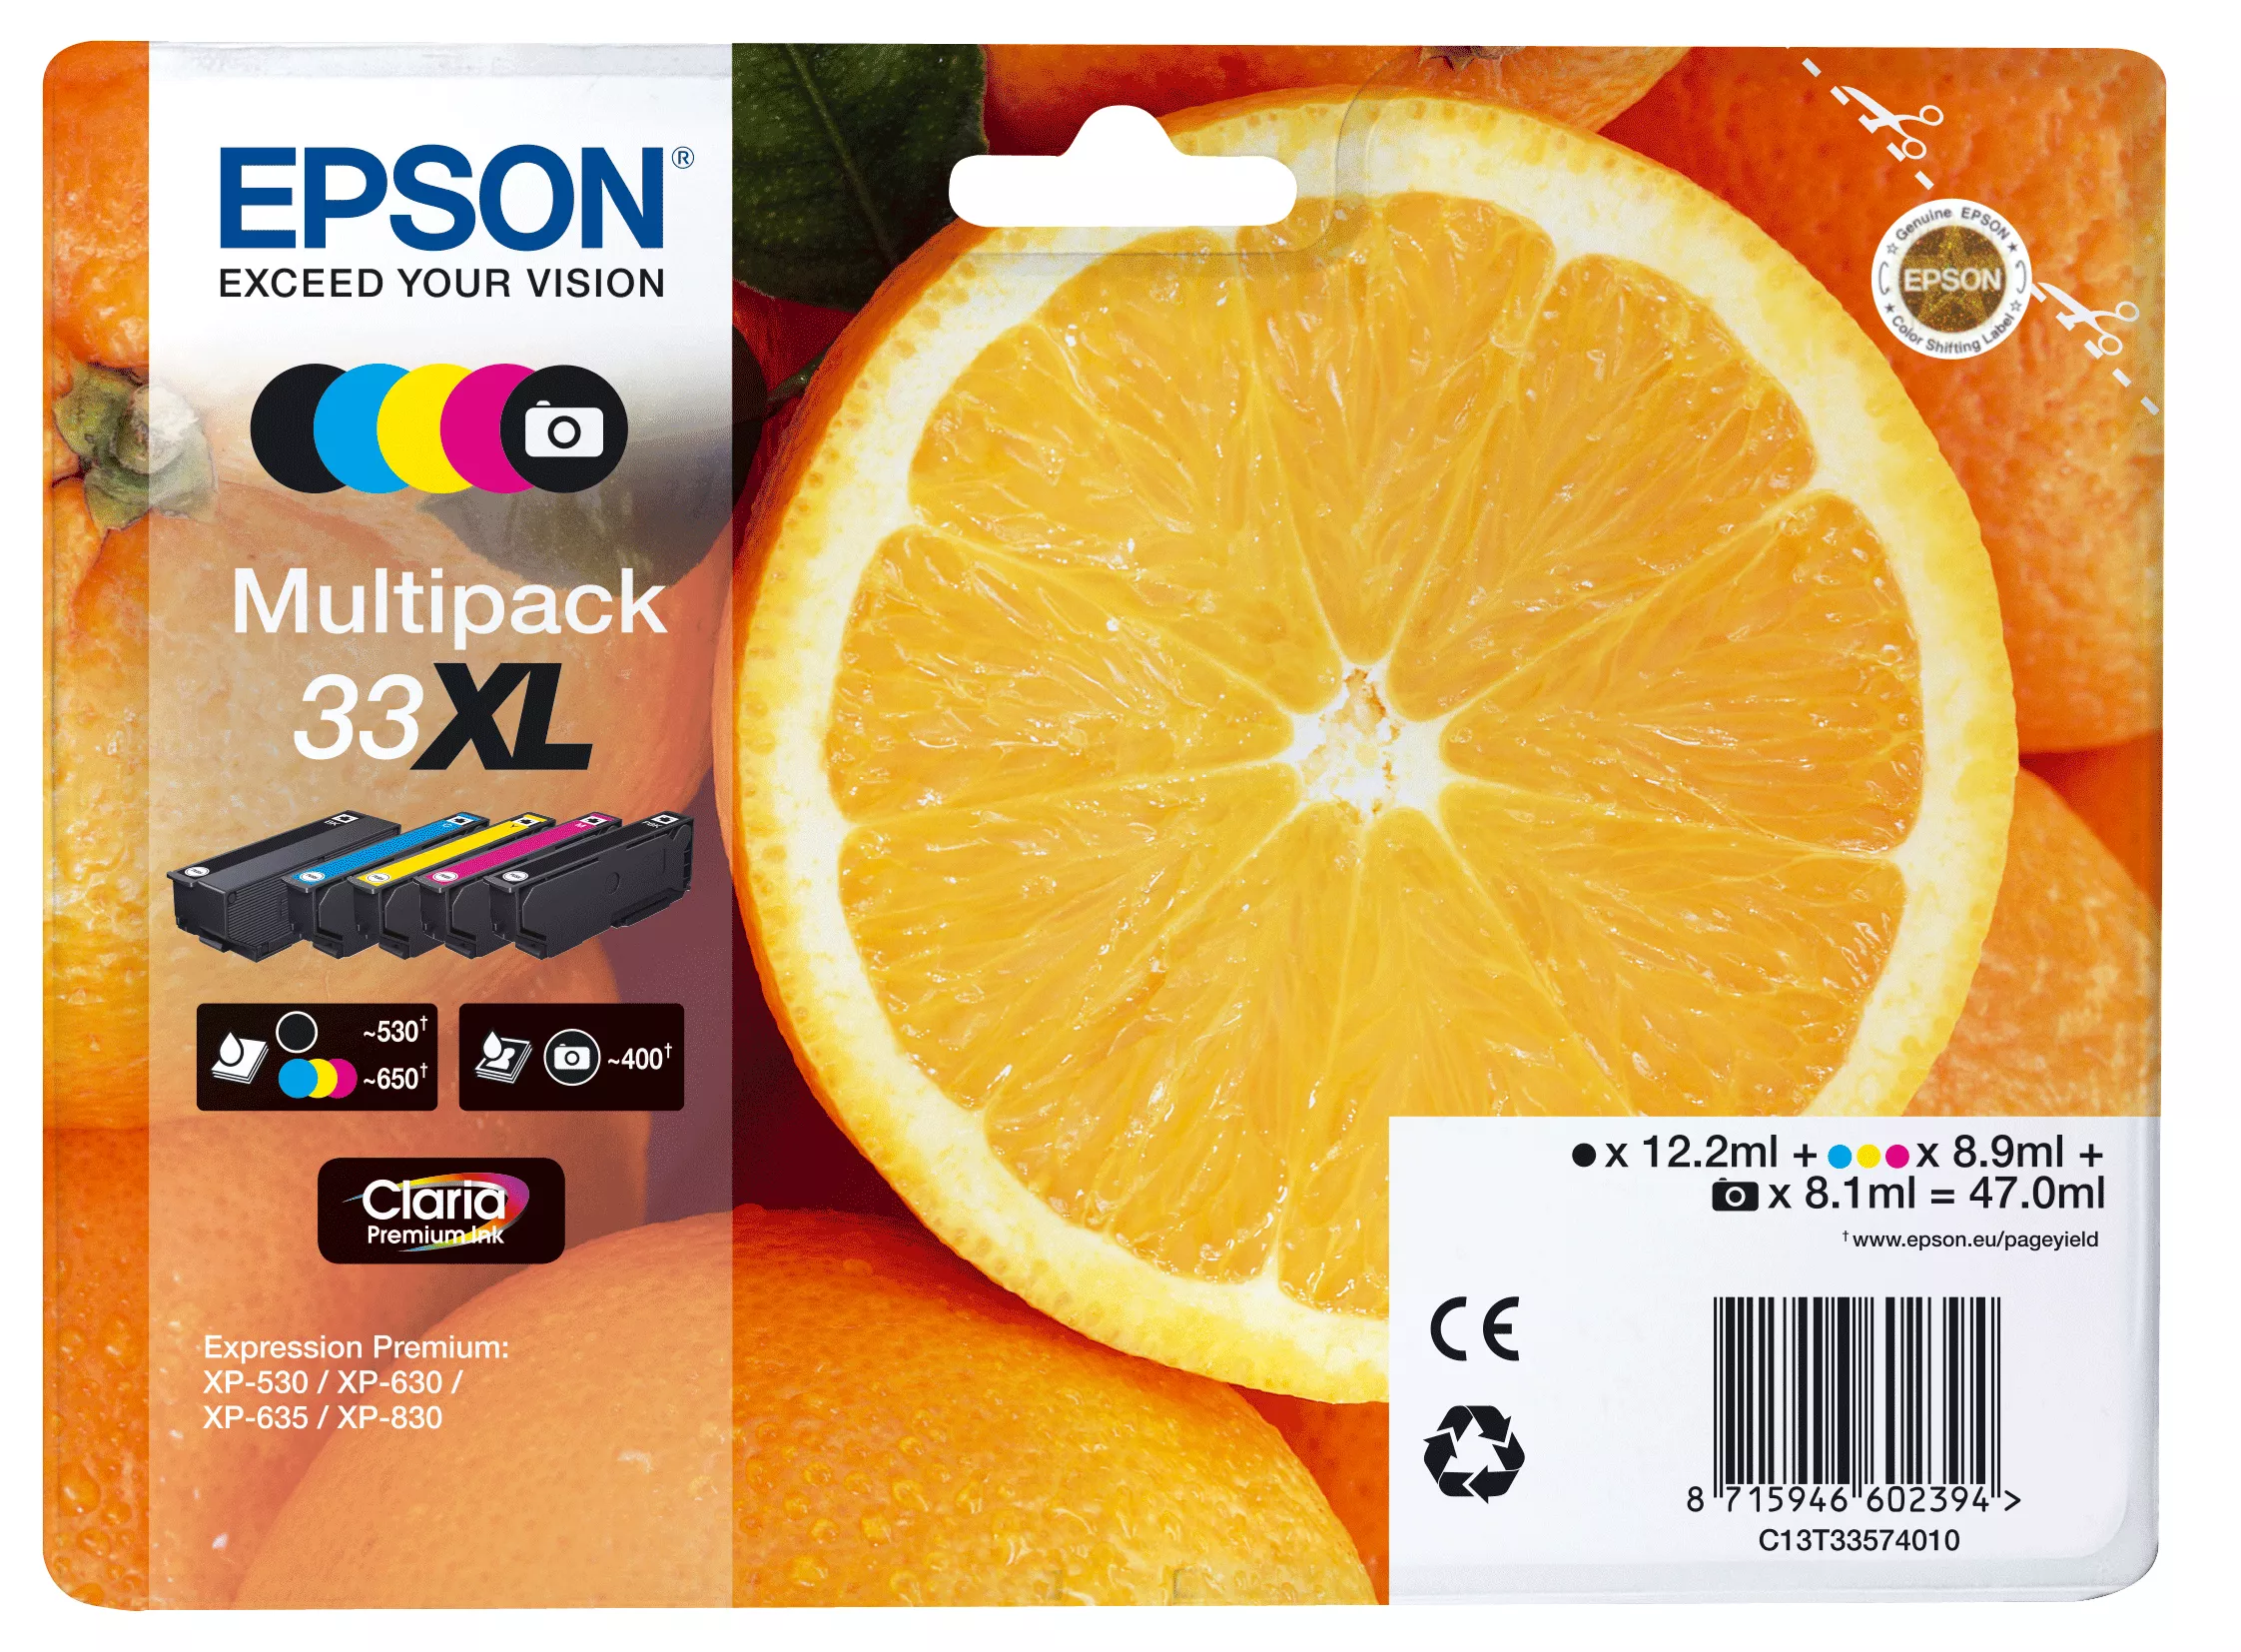 Vente Cartouches d'encre EPSON Multipack Oranges non alarmé - Encre Claria sur hello RSE